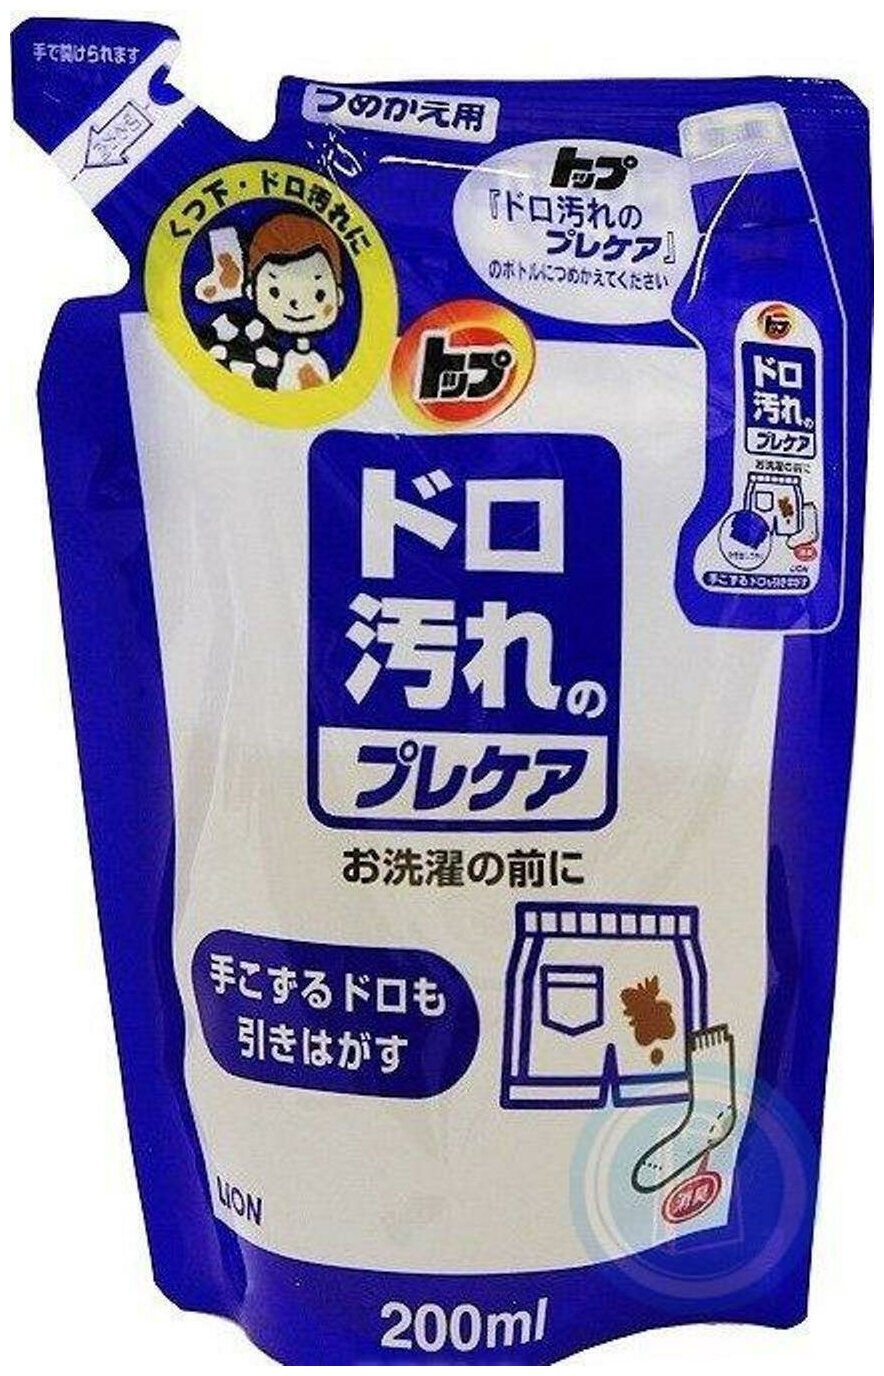 Lion Пятновыводитель для удаления сильных загрязнений Lion Top 200 гр для цветного, белого белья, стирки тканей Япония